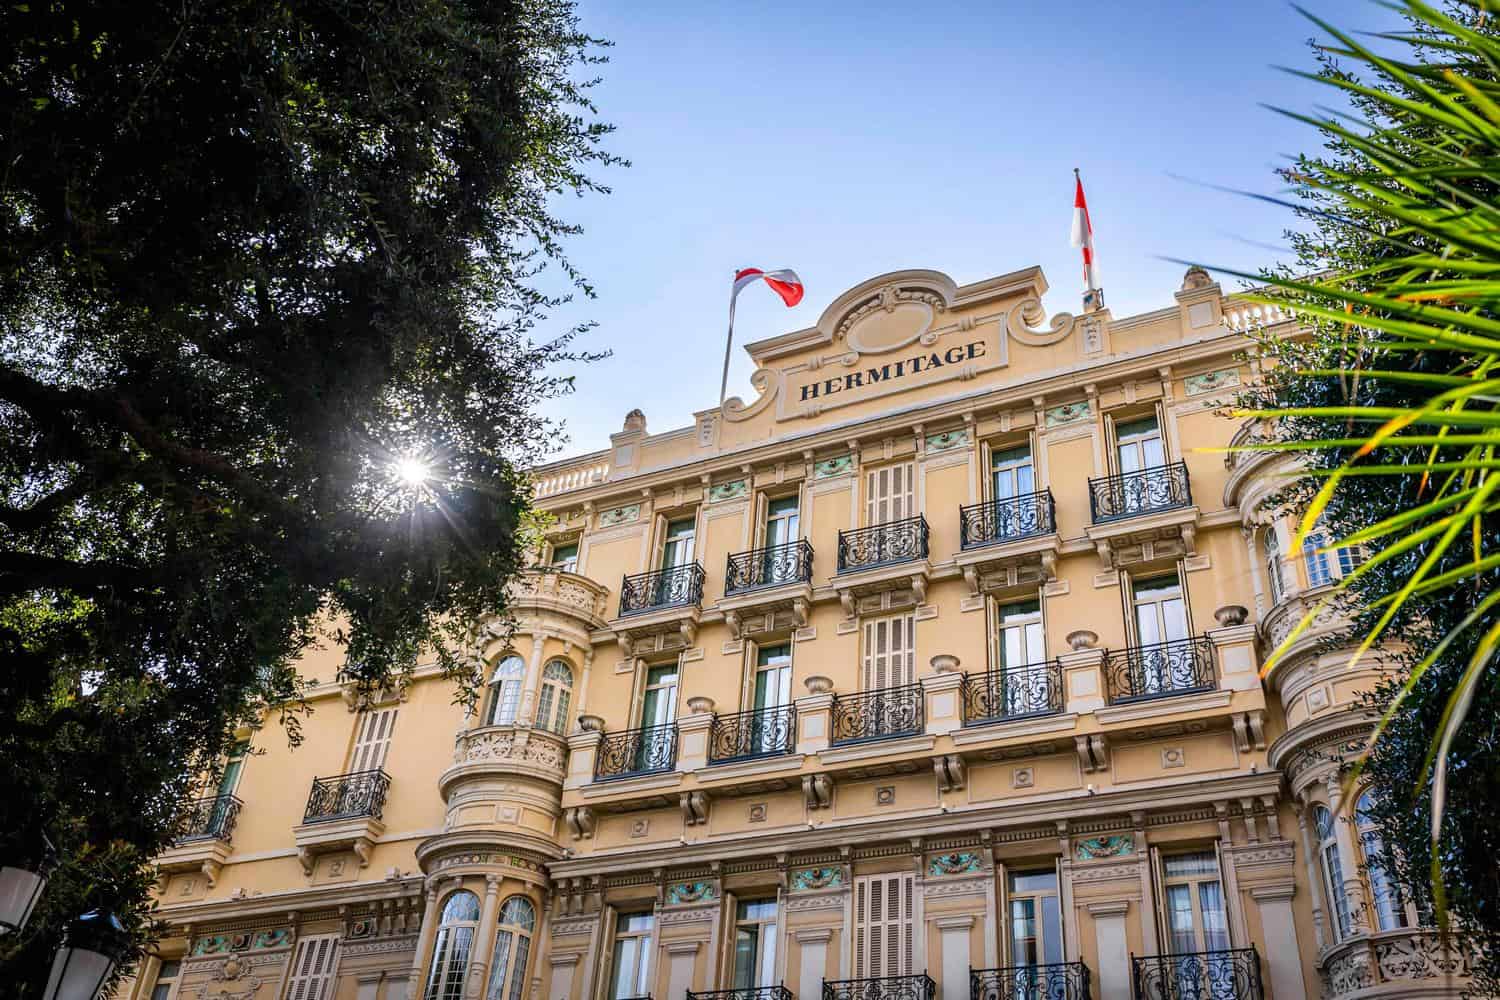 Hotel Hermitage Monte Carlo Facade